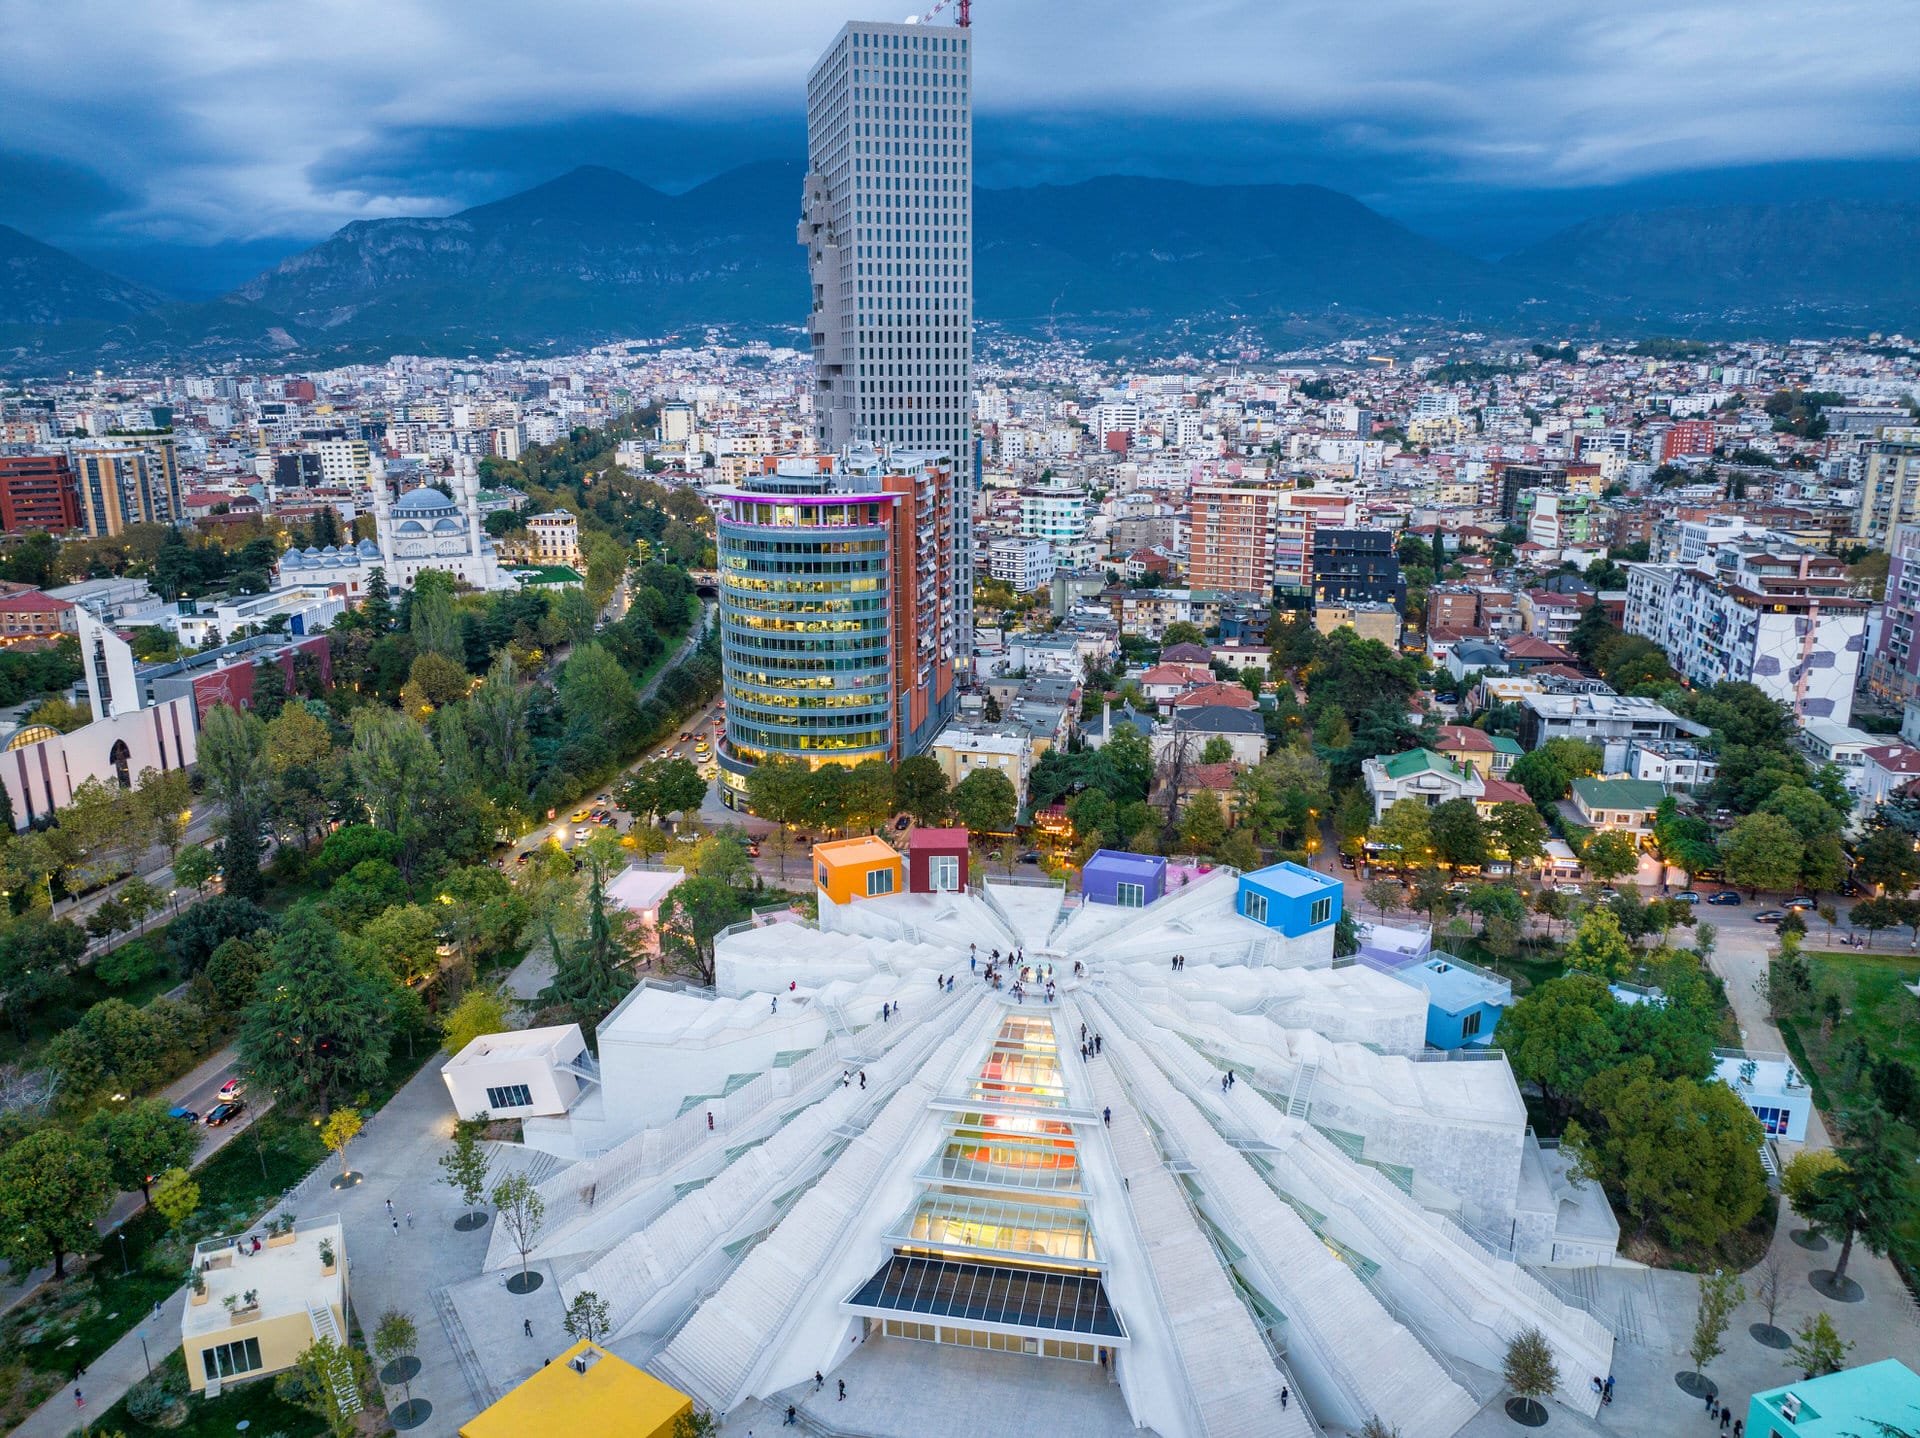 The Pyramid of Tirana, a symbol of the capital of Albania